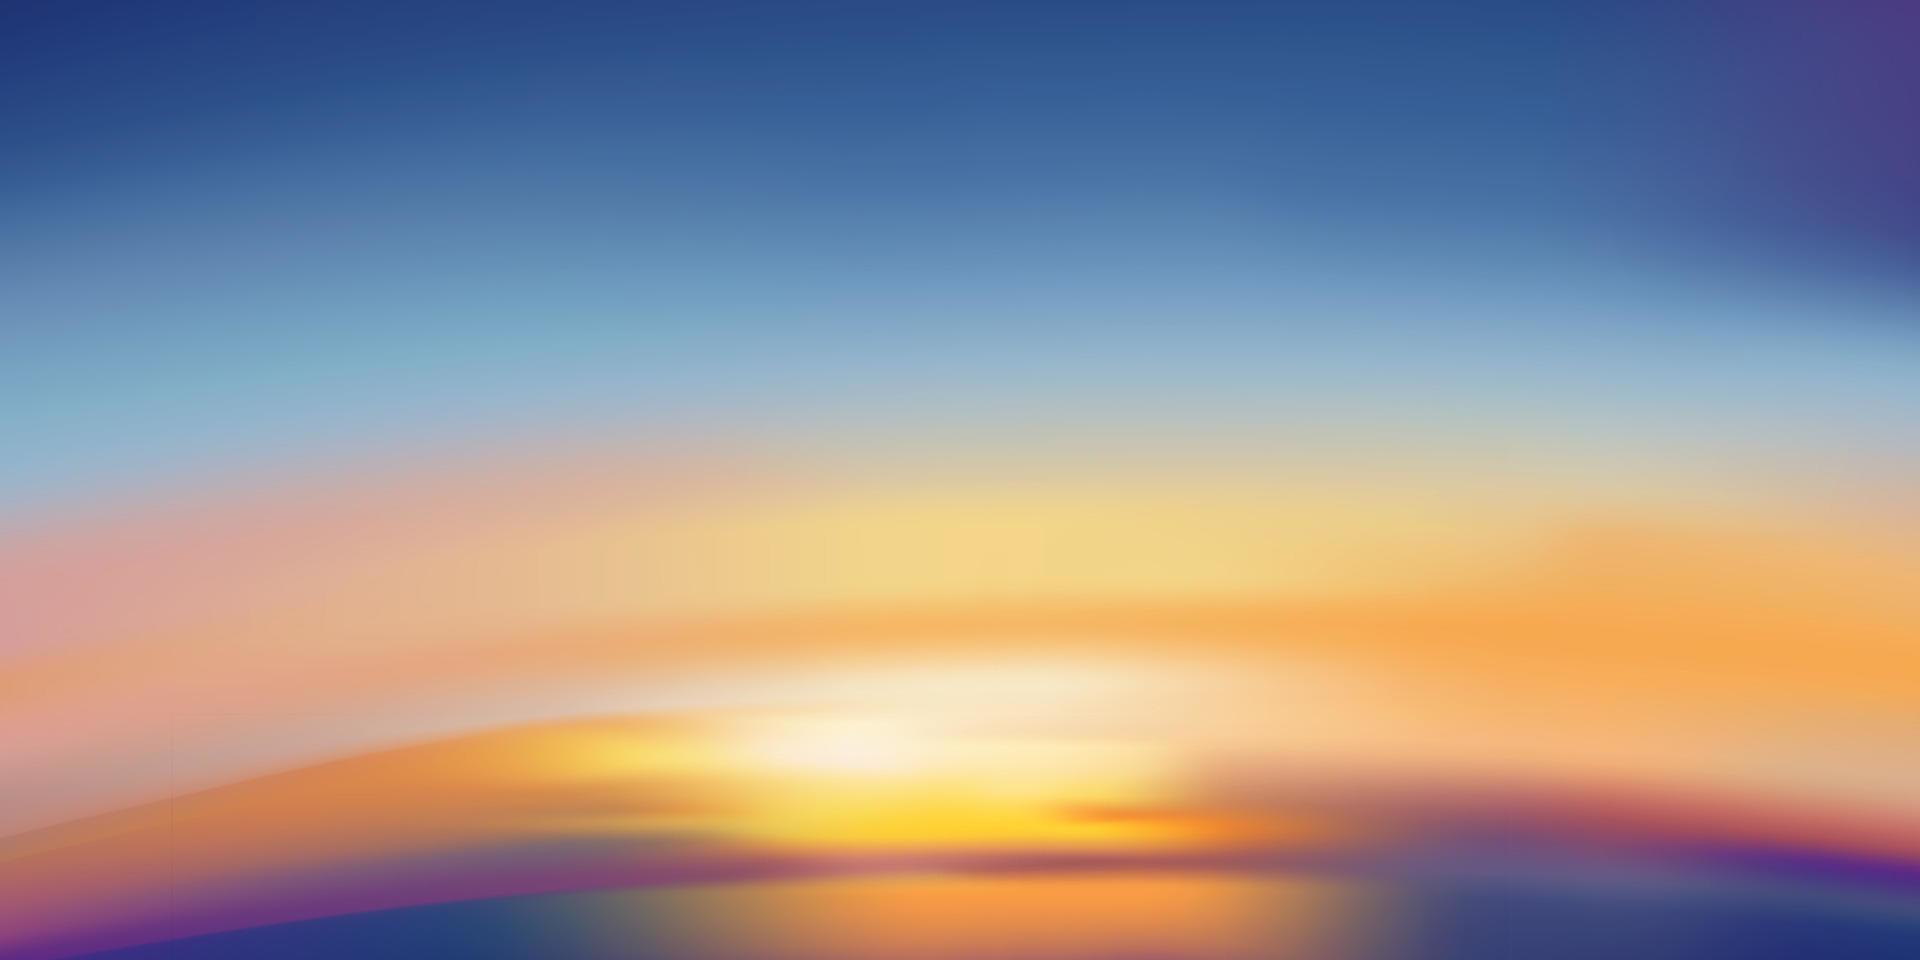 cielo de puesta de sol por la noche con color naranja, amarillo, púrpura, espectacular paisaje crepuscular cielo de pato con color azul, banner de horizonte vectorial amanecer romántico para el fondo de primavera o verano, panorama natural vector